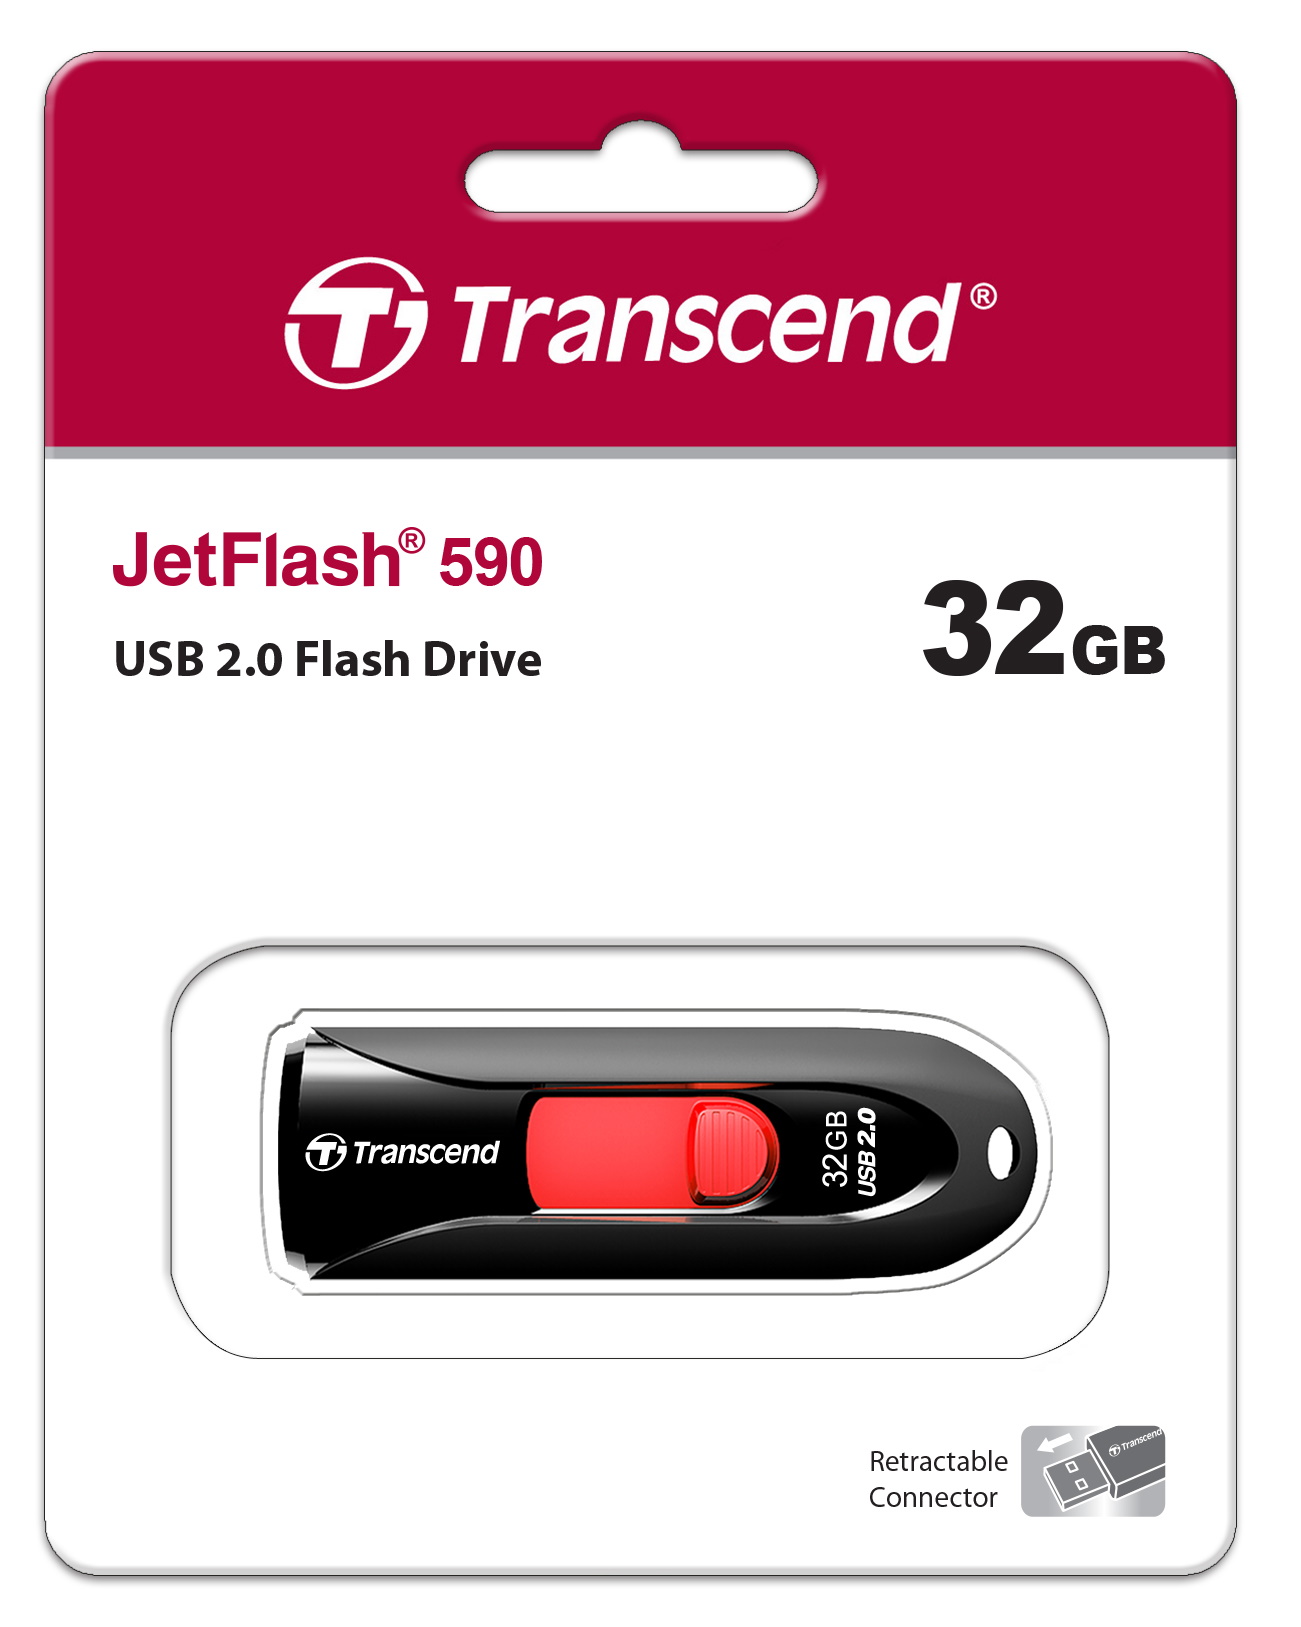 Transcend 32GB Transcend JetFlash 590 USB2.0 Flash Drive w/ sliding USB connector